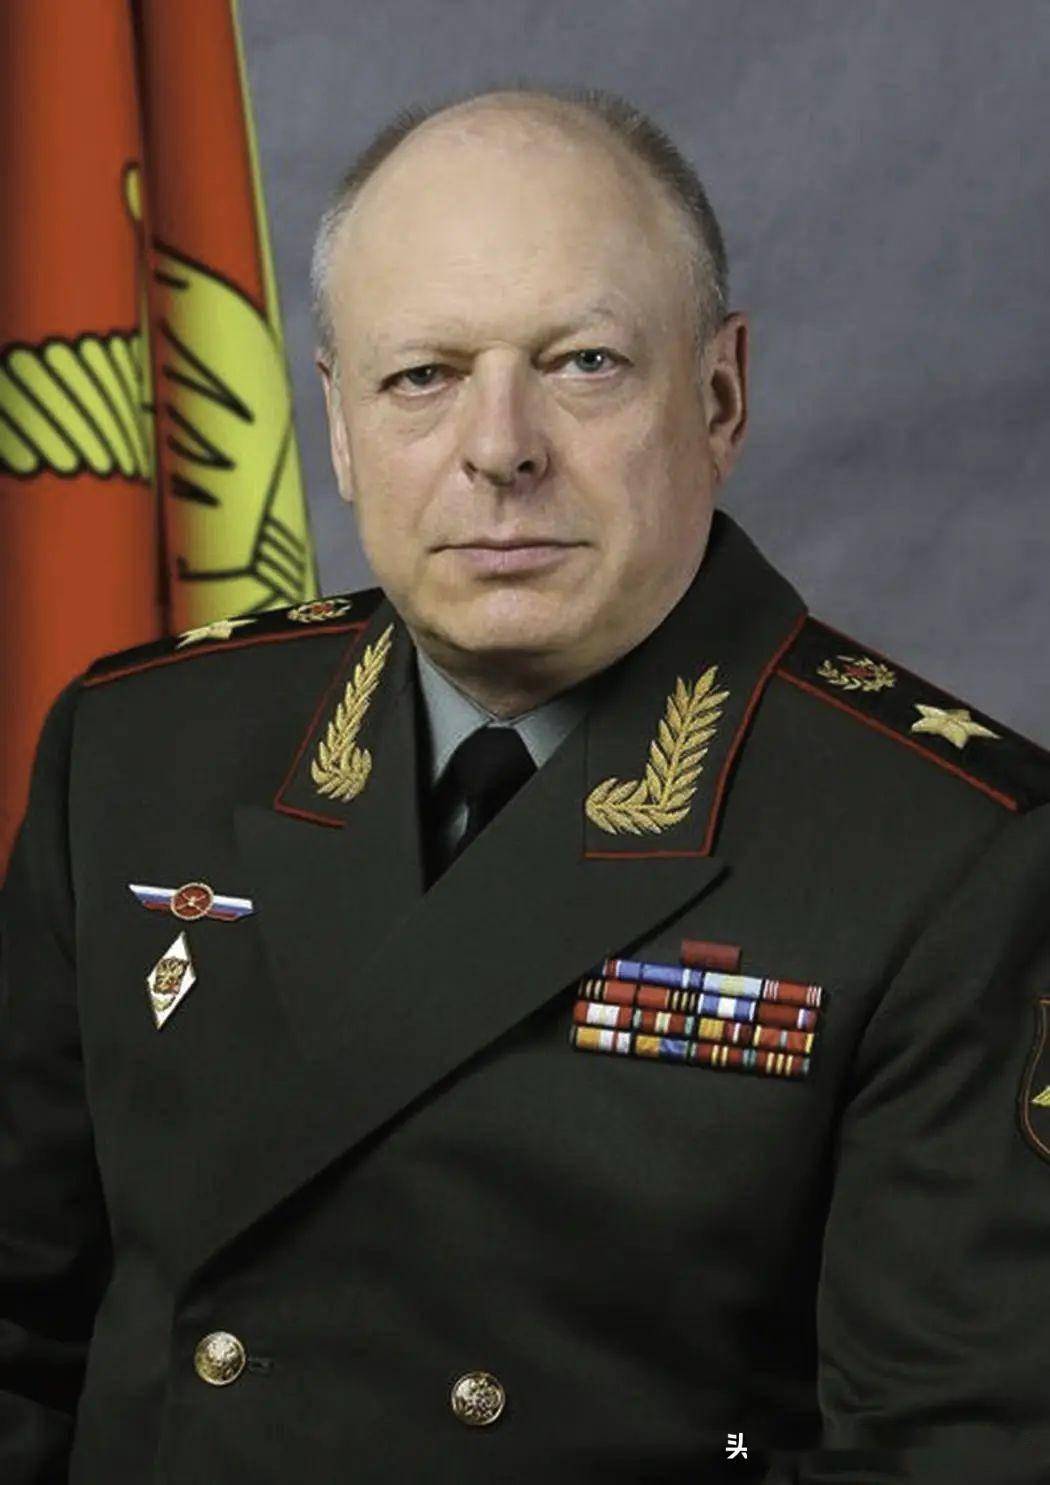 陆军总司令奥列格·列昂尼多维奇·萨柳科夫大将的专题文章——《原野